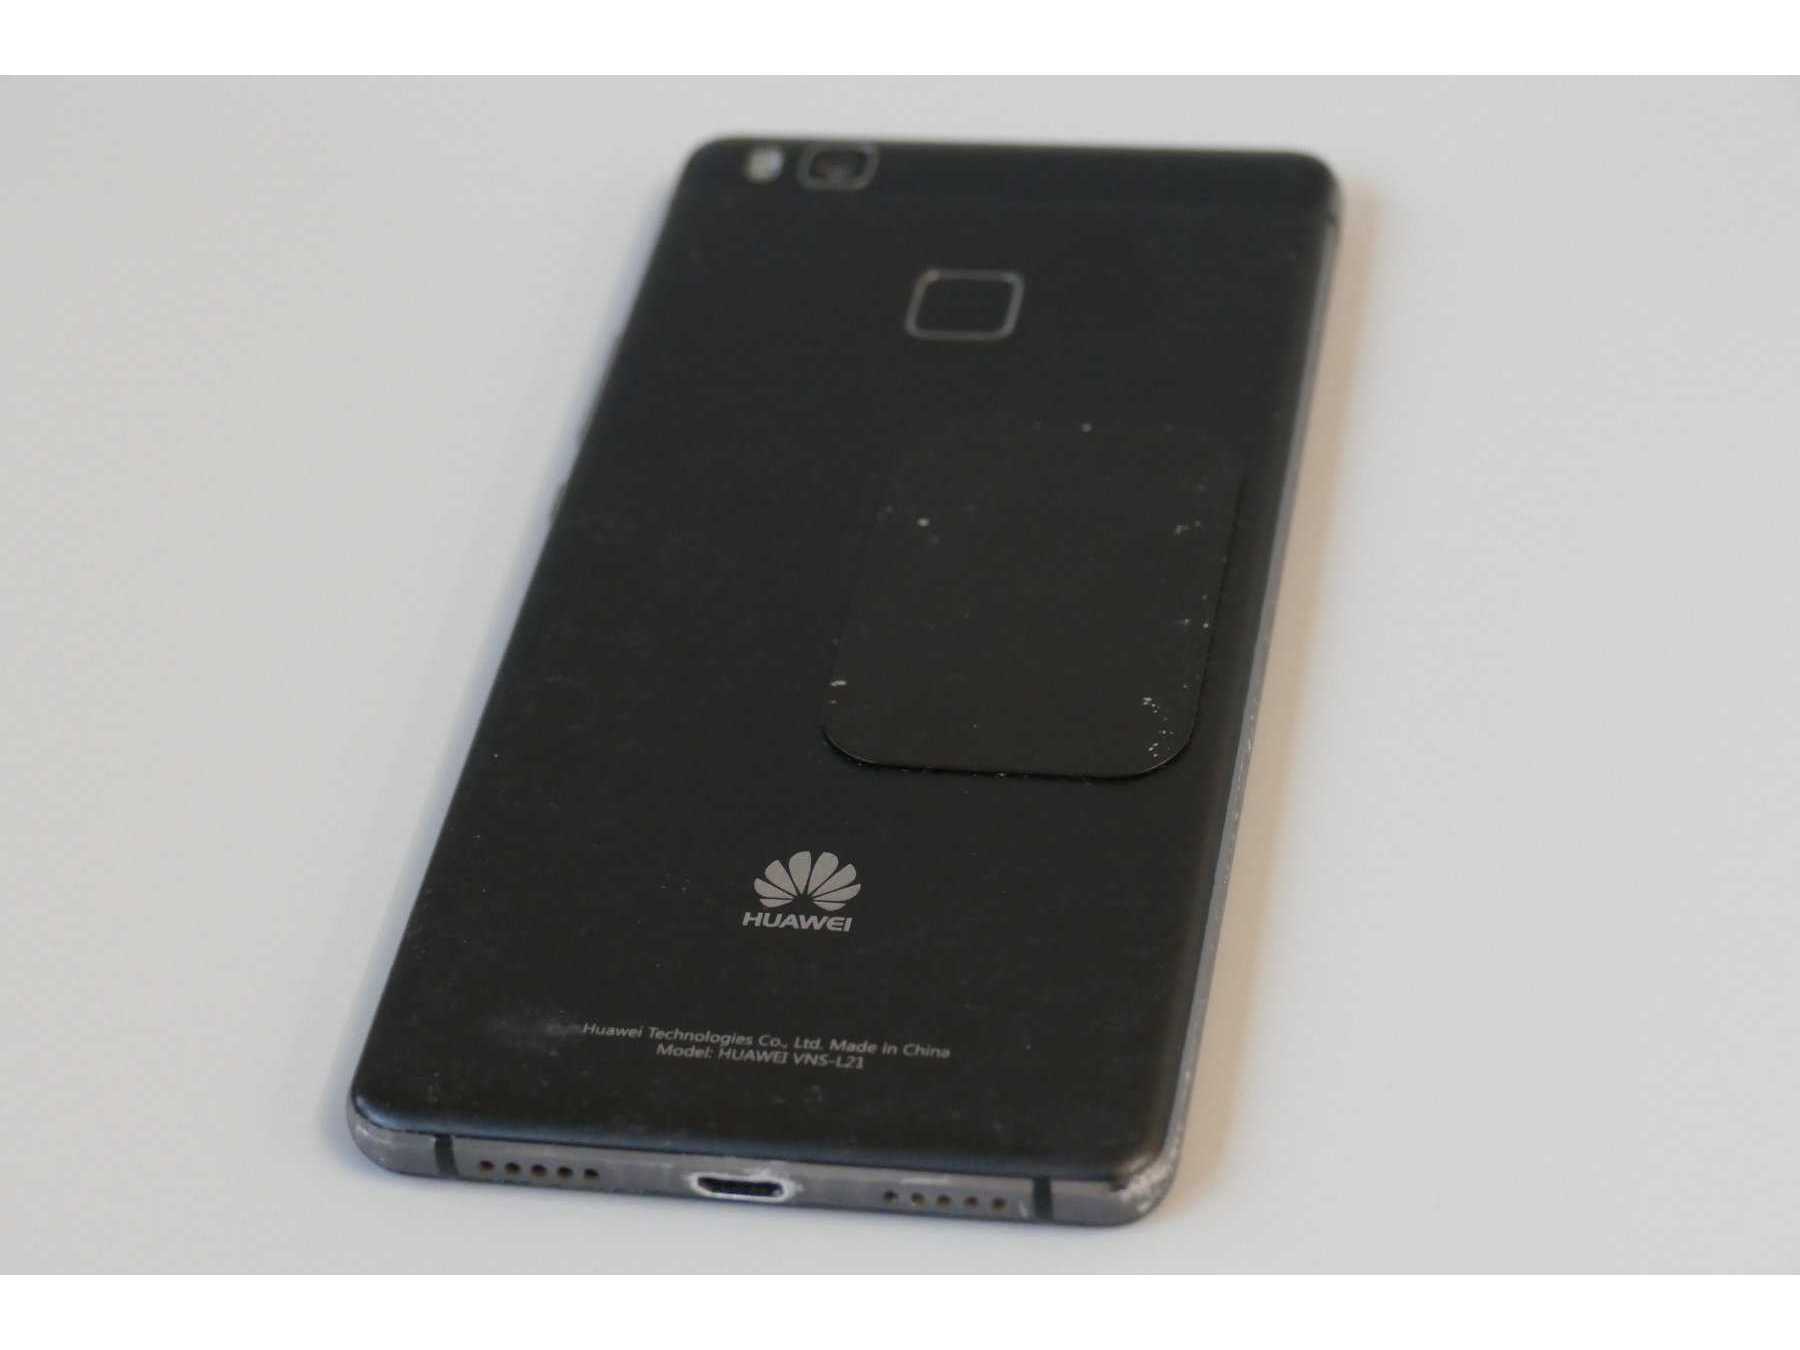 Huawei P9 Lite (vns-121), 16 GB, Rückseitenansicht im Liegen